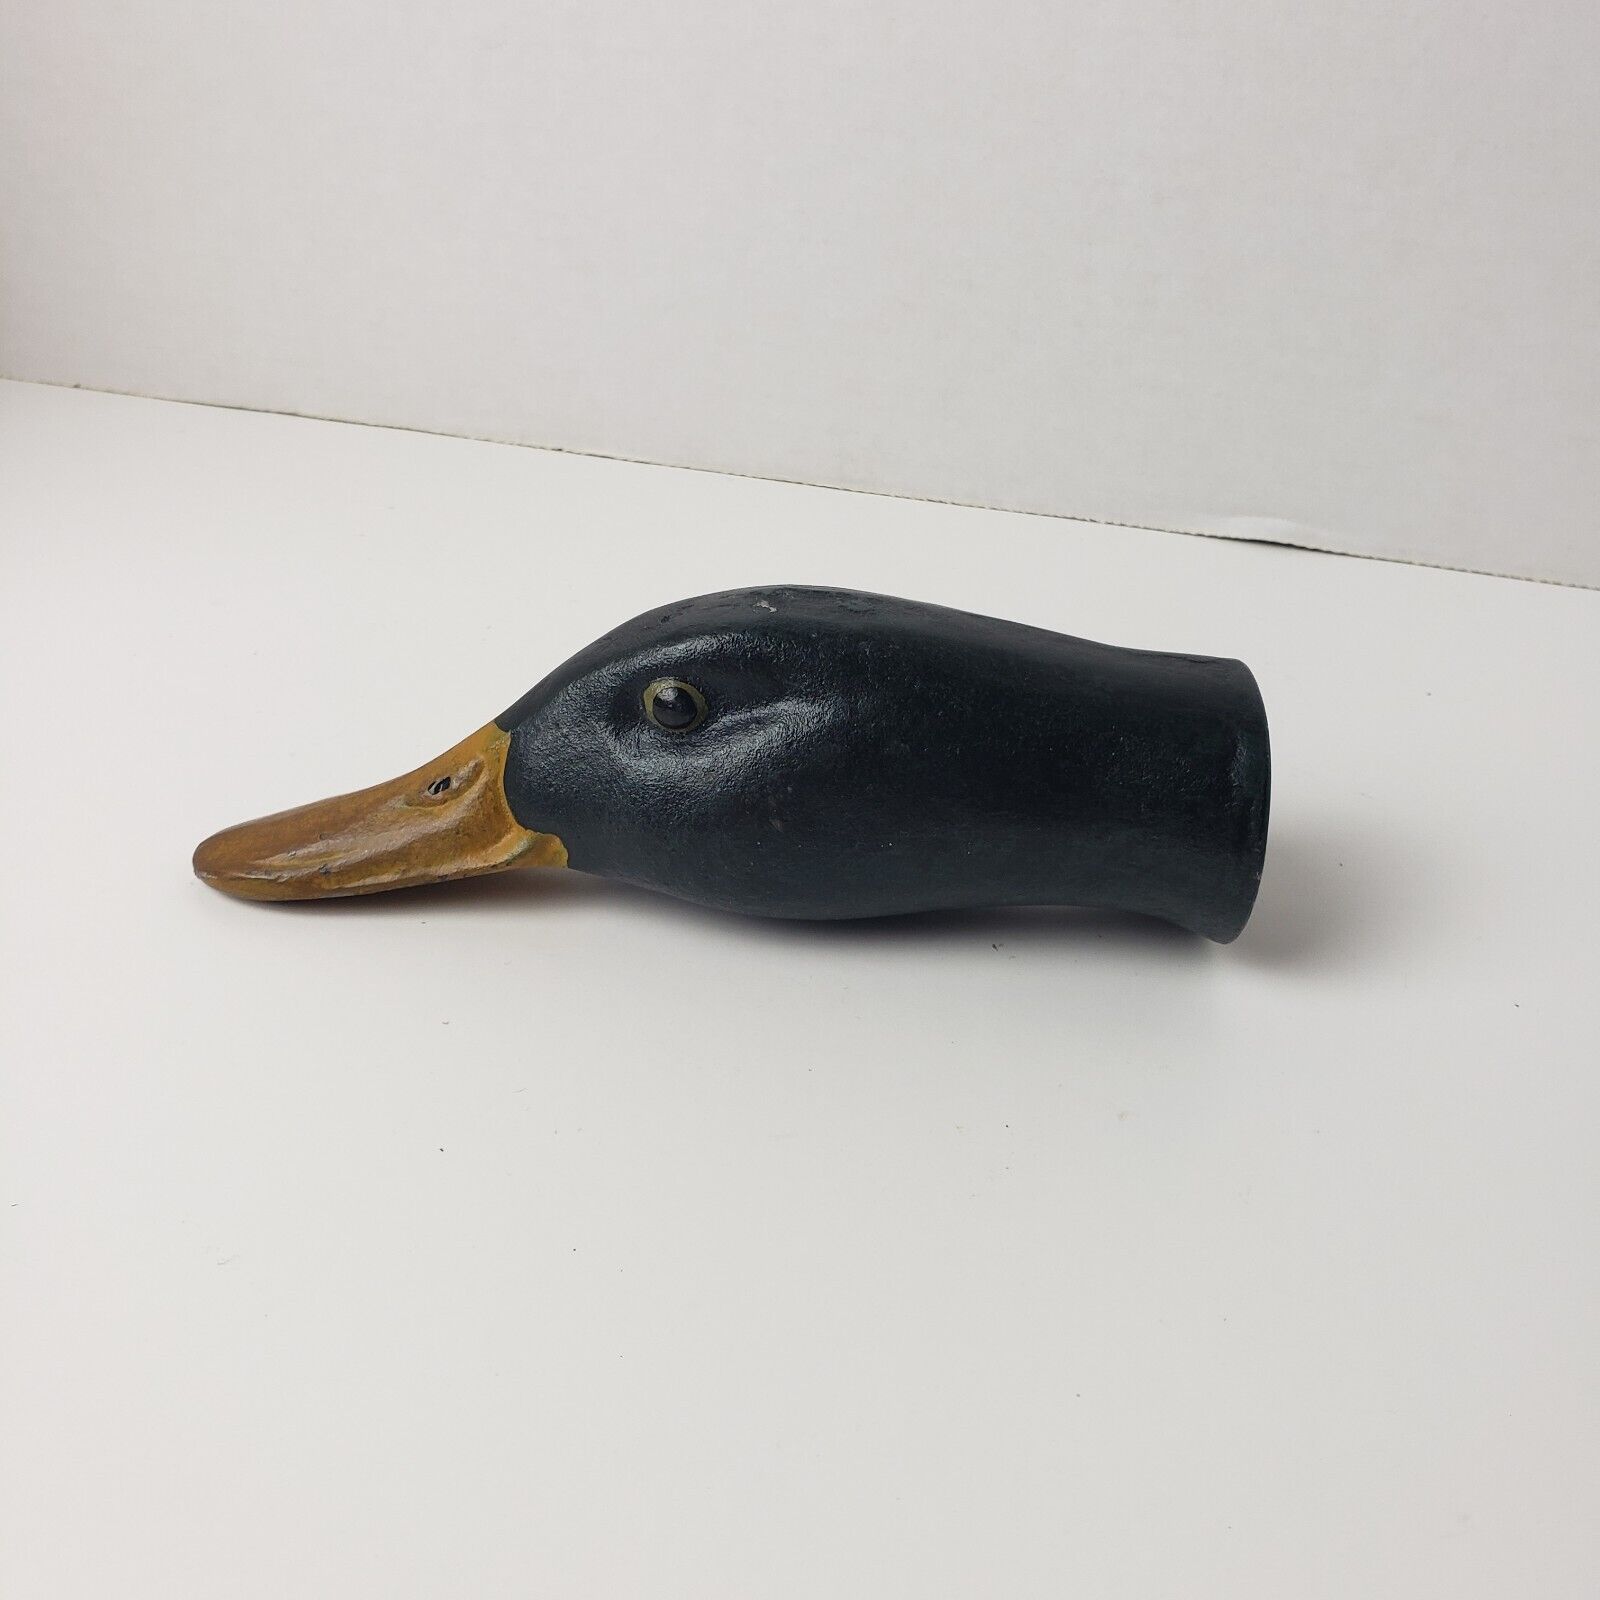 Mallard Duck Head Bottle Opener - Hand Painted Cast Metal - Very Sturdy